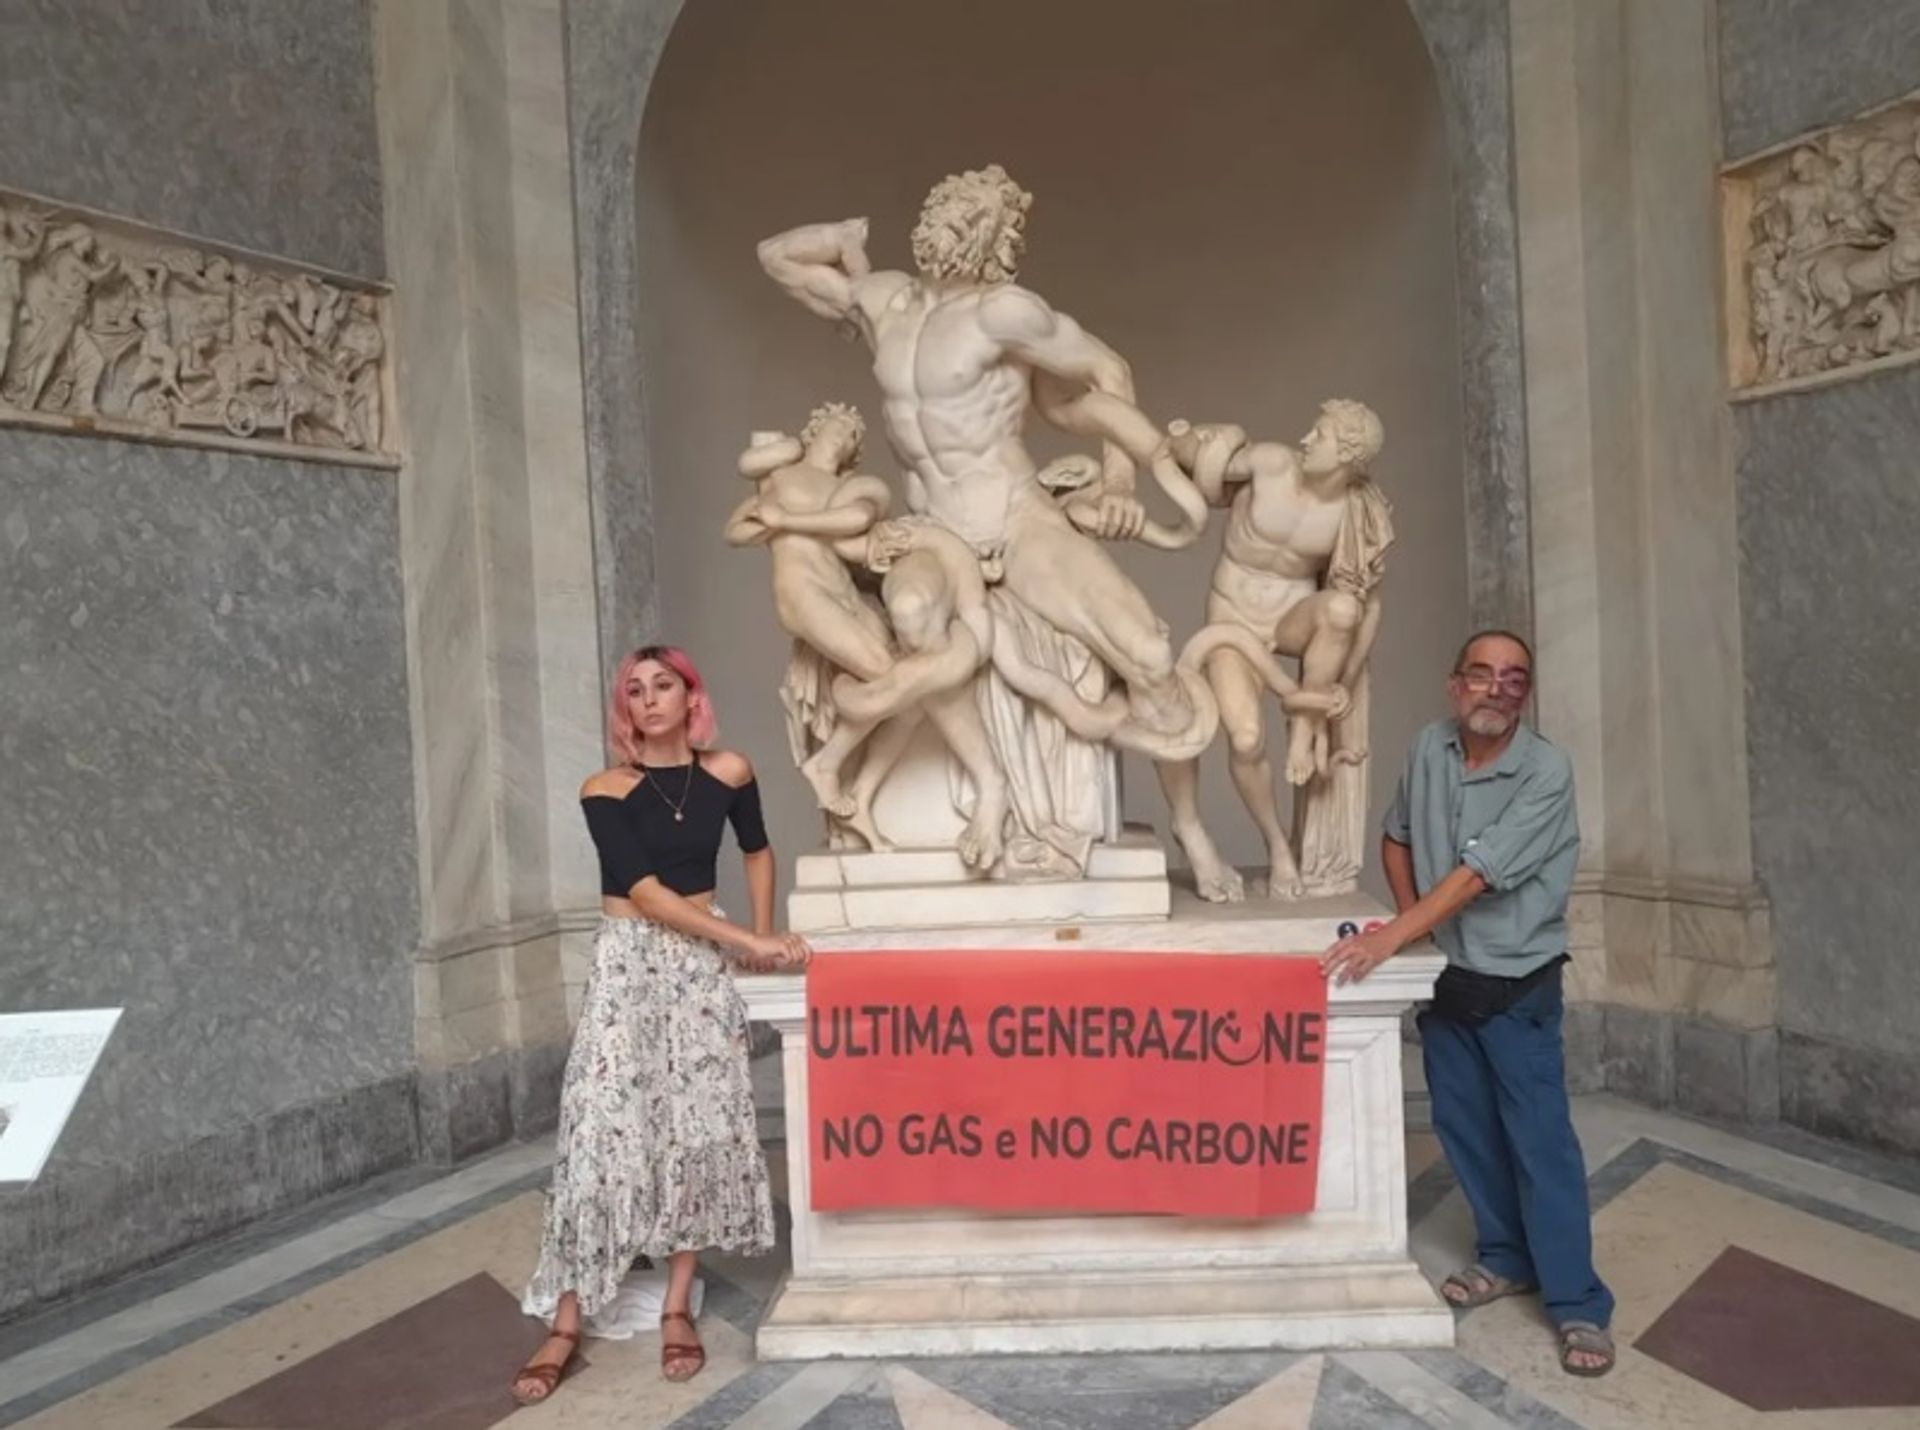 Ultima Generazione מצהירים שהם לא יפסיקו עד שאיטליה תפסיק את פתיחתם מחדש של מכרות פחם ישנים, תפסיק חיפושי גז חדשים במדינה ותשקיע ברצינות באנרגיית השמש והרוח.

צילום: אלסנדרו פוגליזה